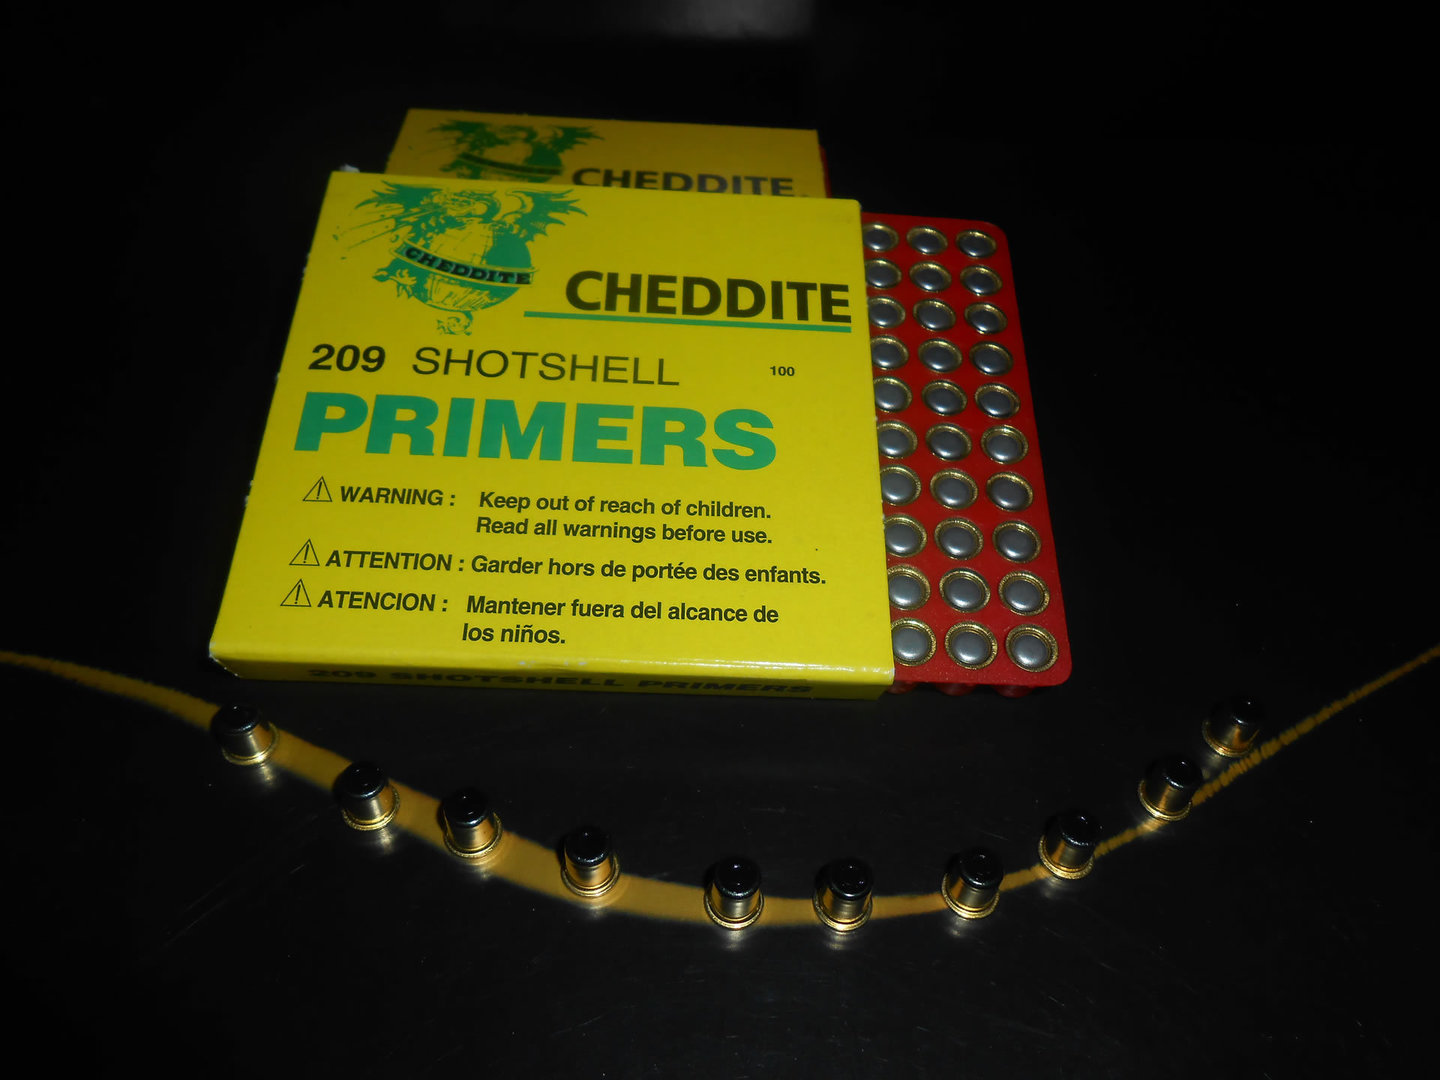 Confezione commerciale da 100 inneschi Cheddite " PRIMERS CLERINOX...